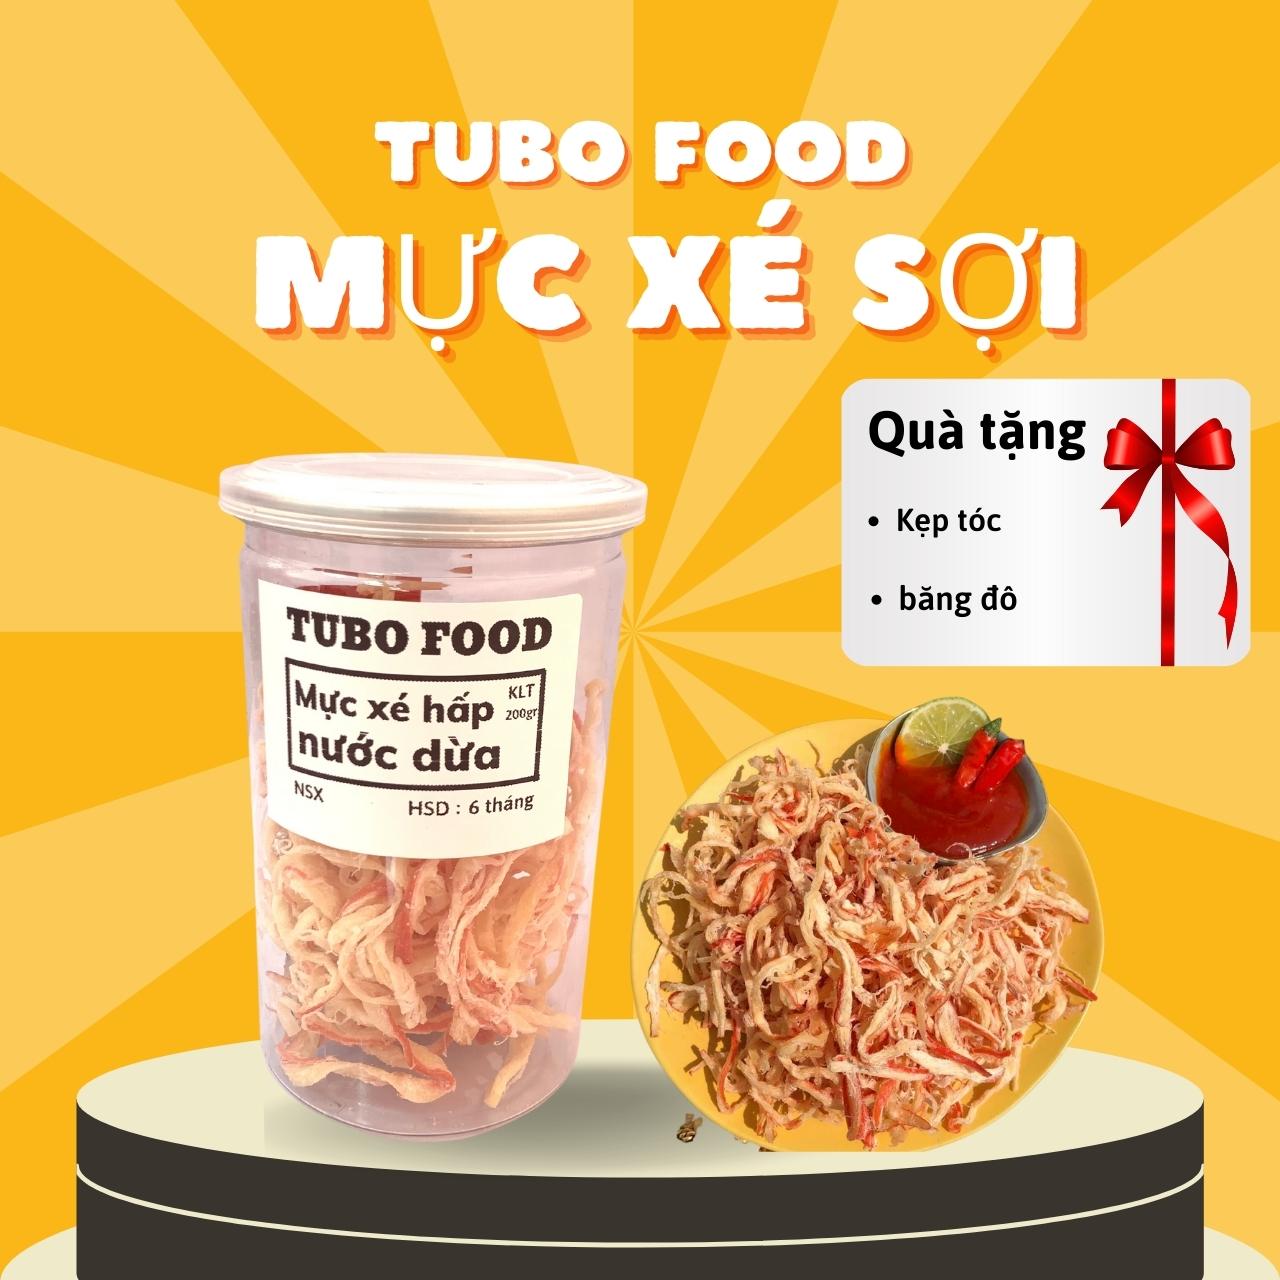 Khô Mực Xé Sợi Hấp Nước Dừa Thơm Ngon Hàng Loại 1 - Tubo Food